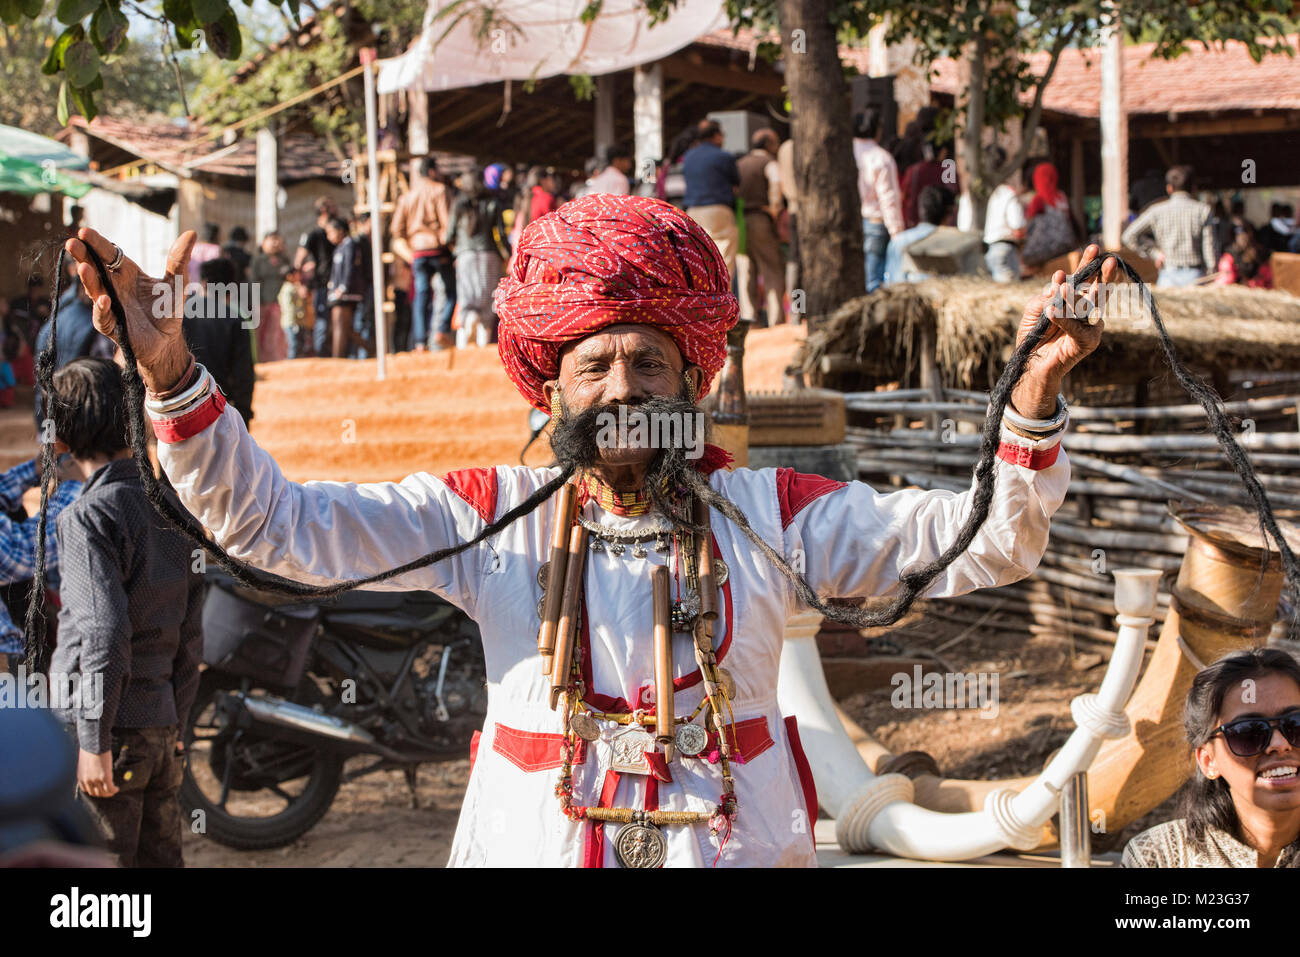 Mr. Mustache contestant, Desert Festival in Jaisalmer, Rajasthan, India Stock Photo